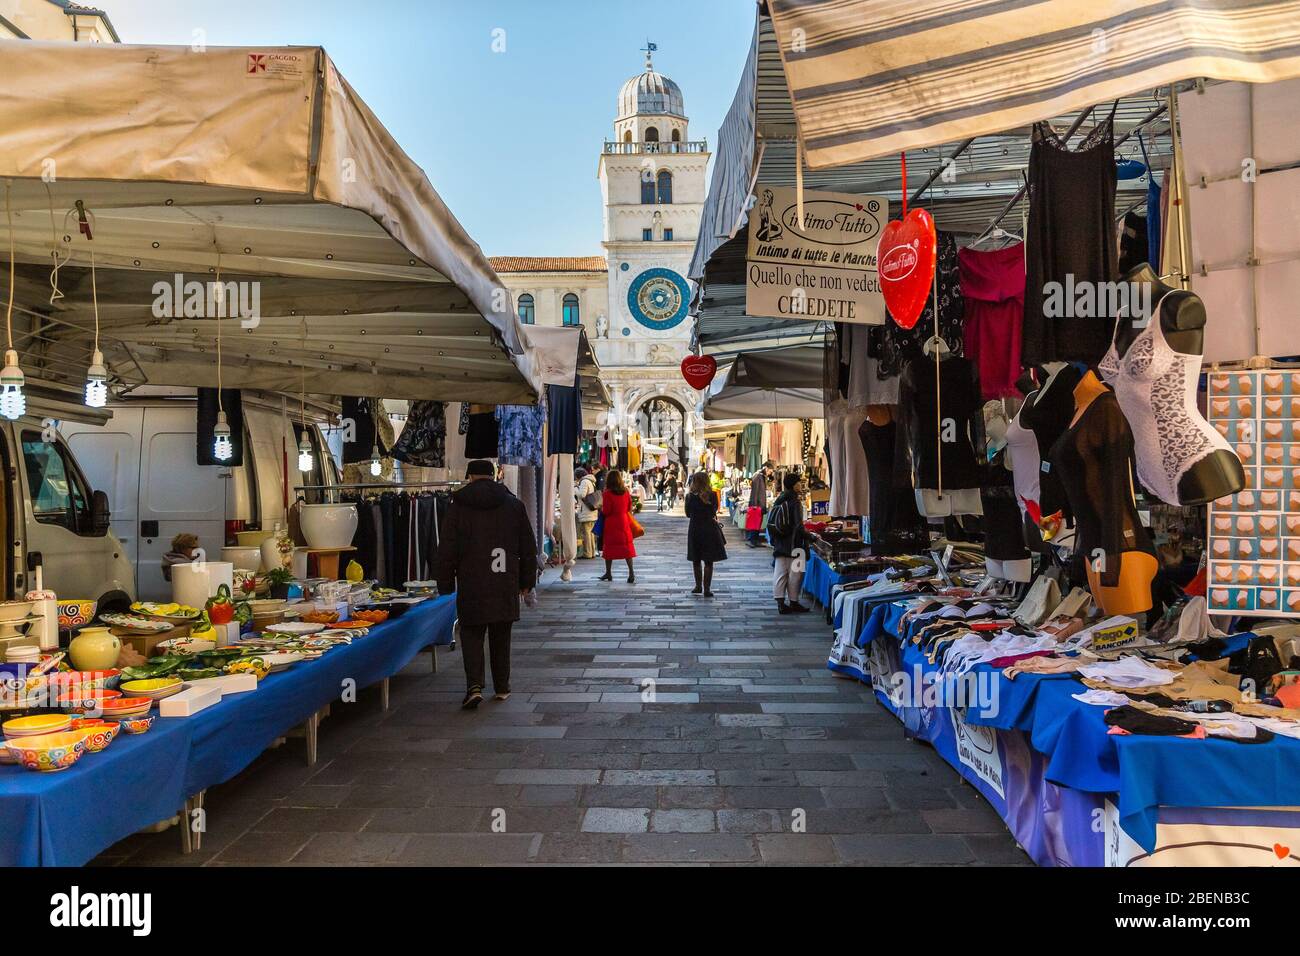 PADOVA, ITALIEN - 23. FEBRUAR 2019: Menschen, die in typischen Markt auf der Piazza dei Signori einkaufen gehen Stockfoto